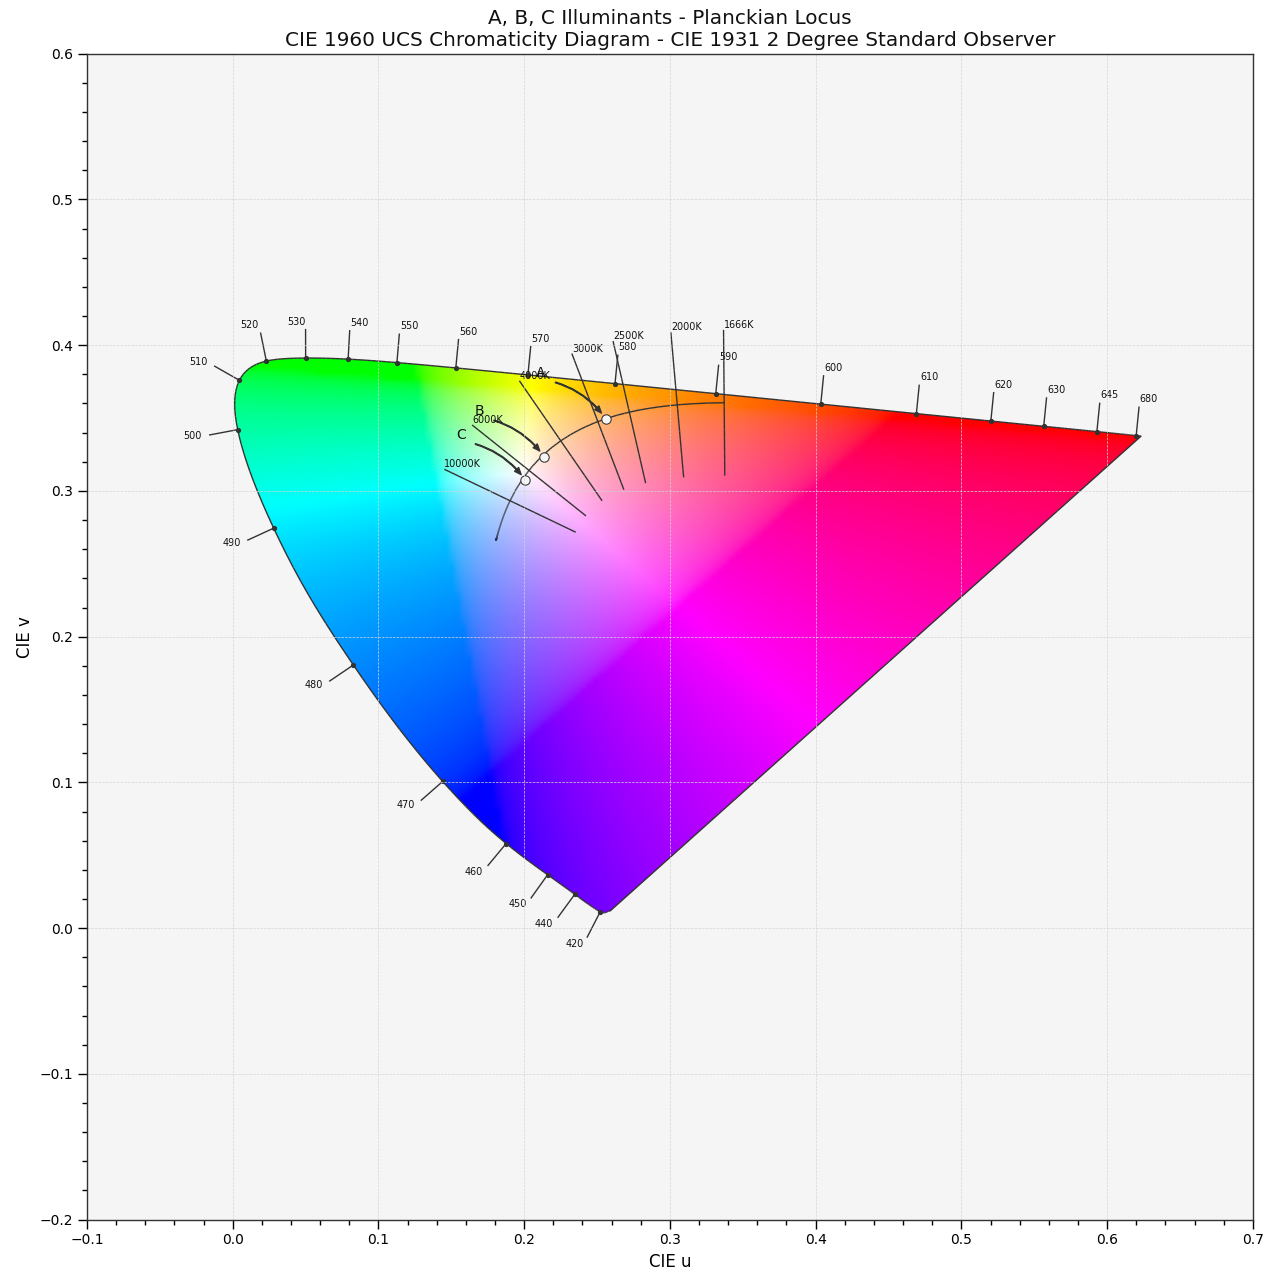 plot_planckian_locus_in_chromaticity_diagram_CIE1960UCS